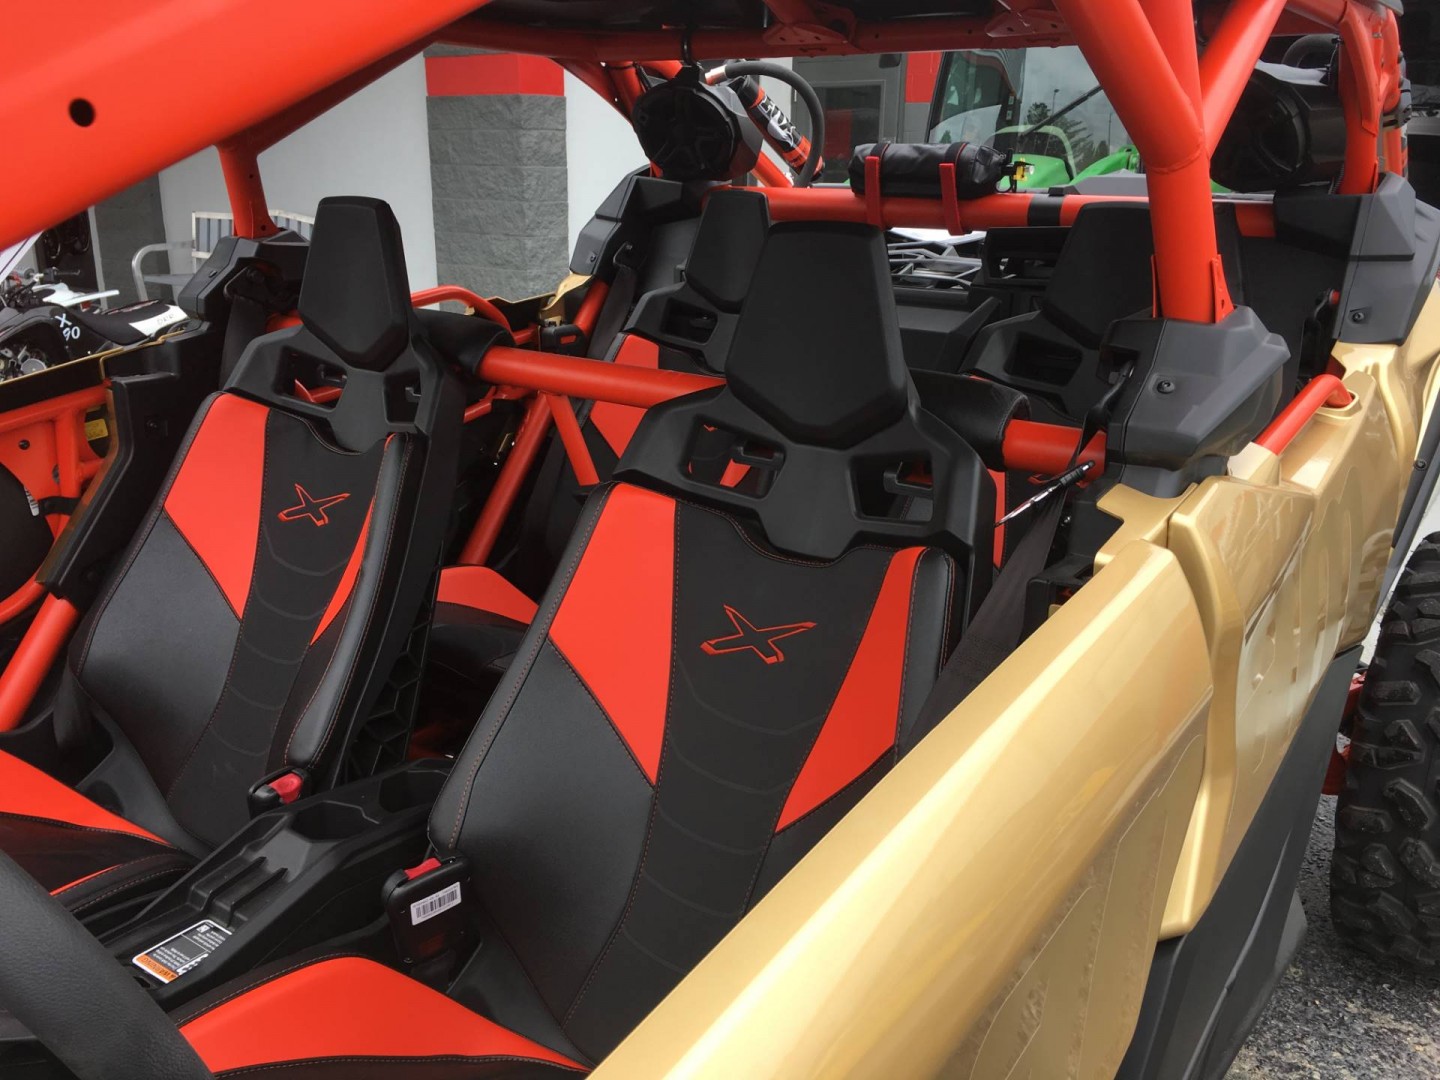 НОВЫЙ BRP Can-Am Maverick X3 MAX XRS Turbo R 2017 года, в наличии во Владив...